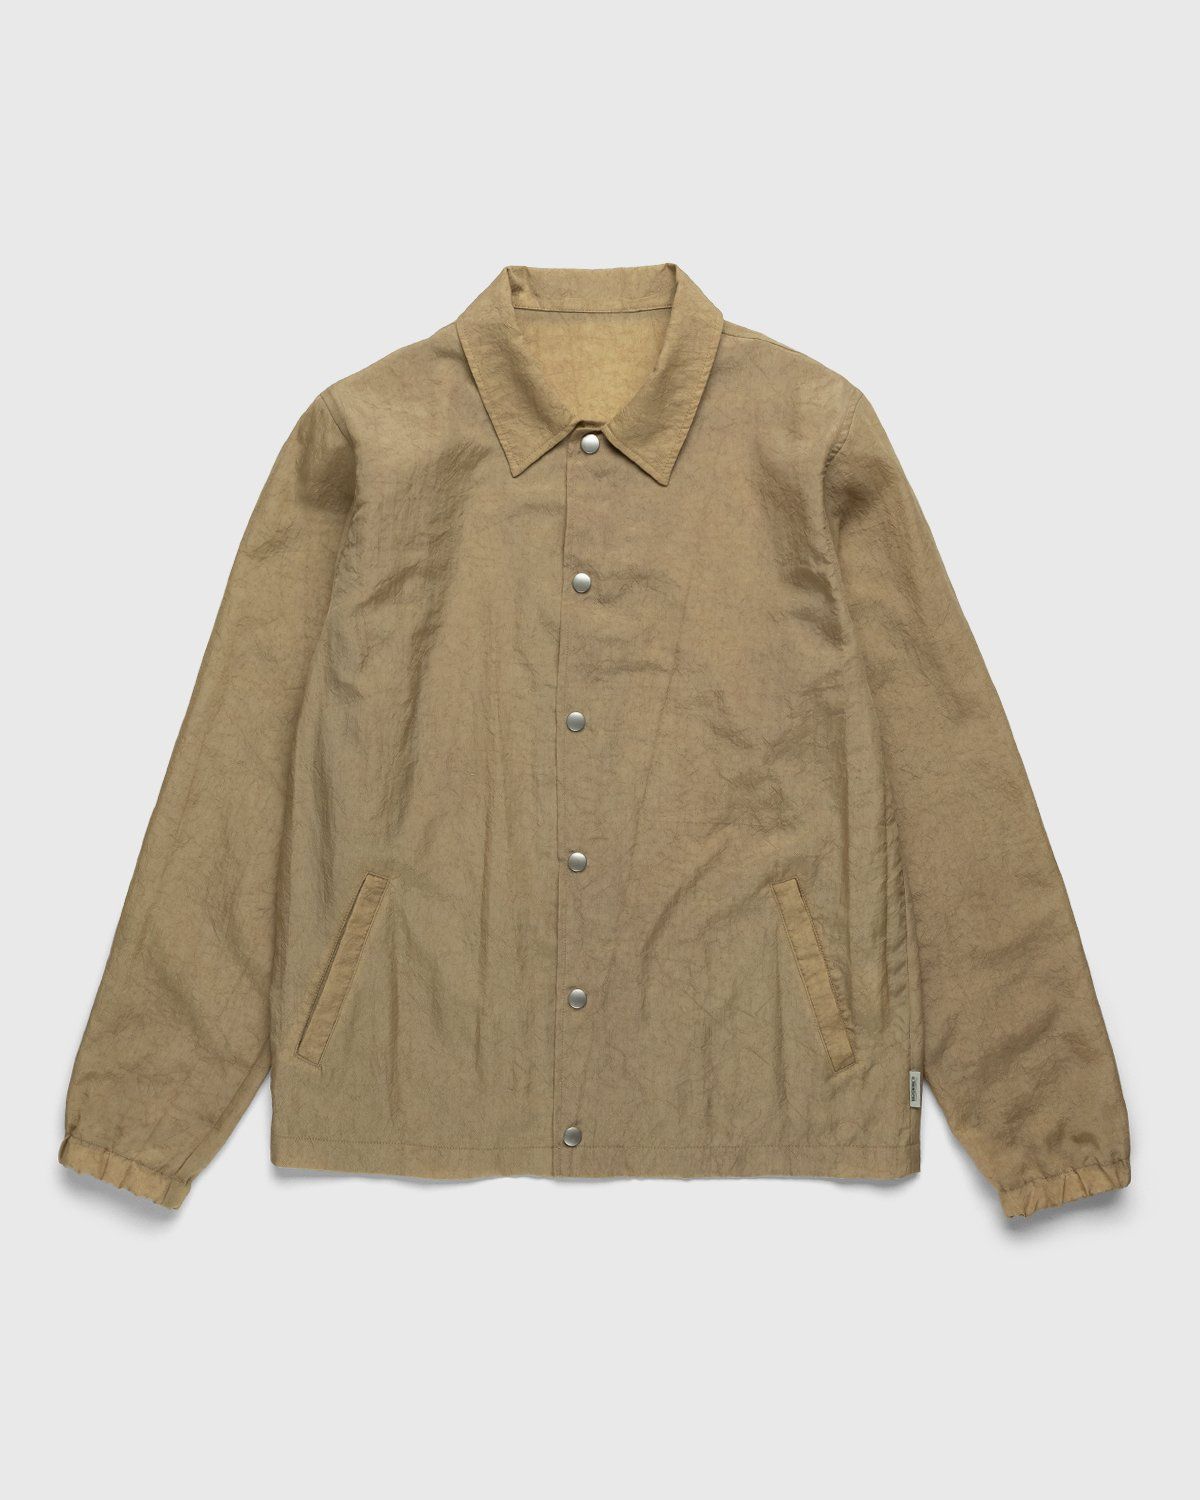 Highsnobiety – Stonewashed Nylon Coach Jacket Gold - Outerwear - Yellow - Image 1